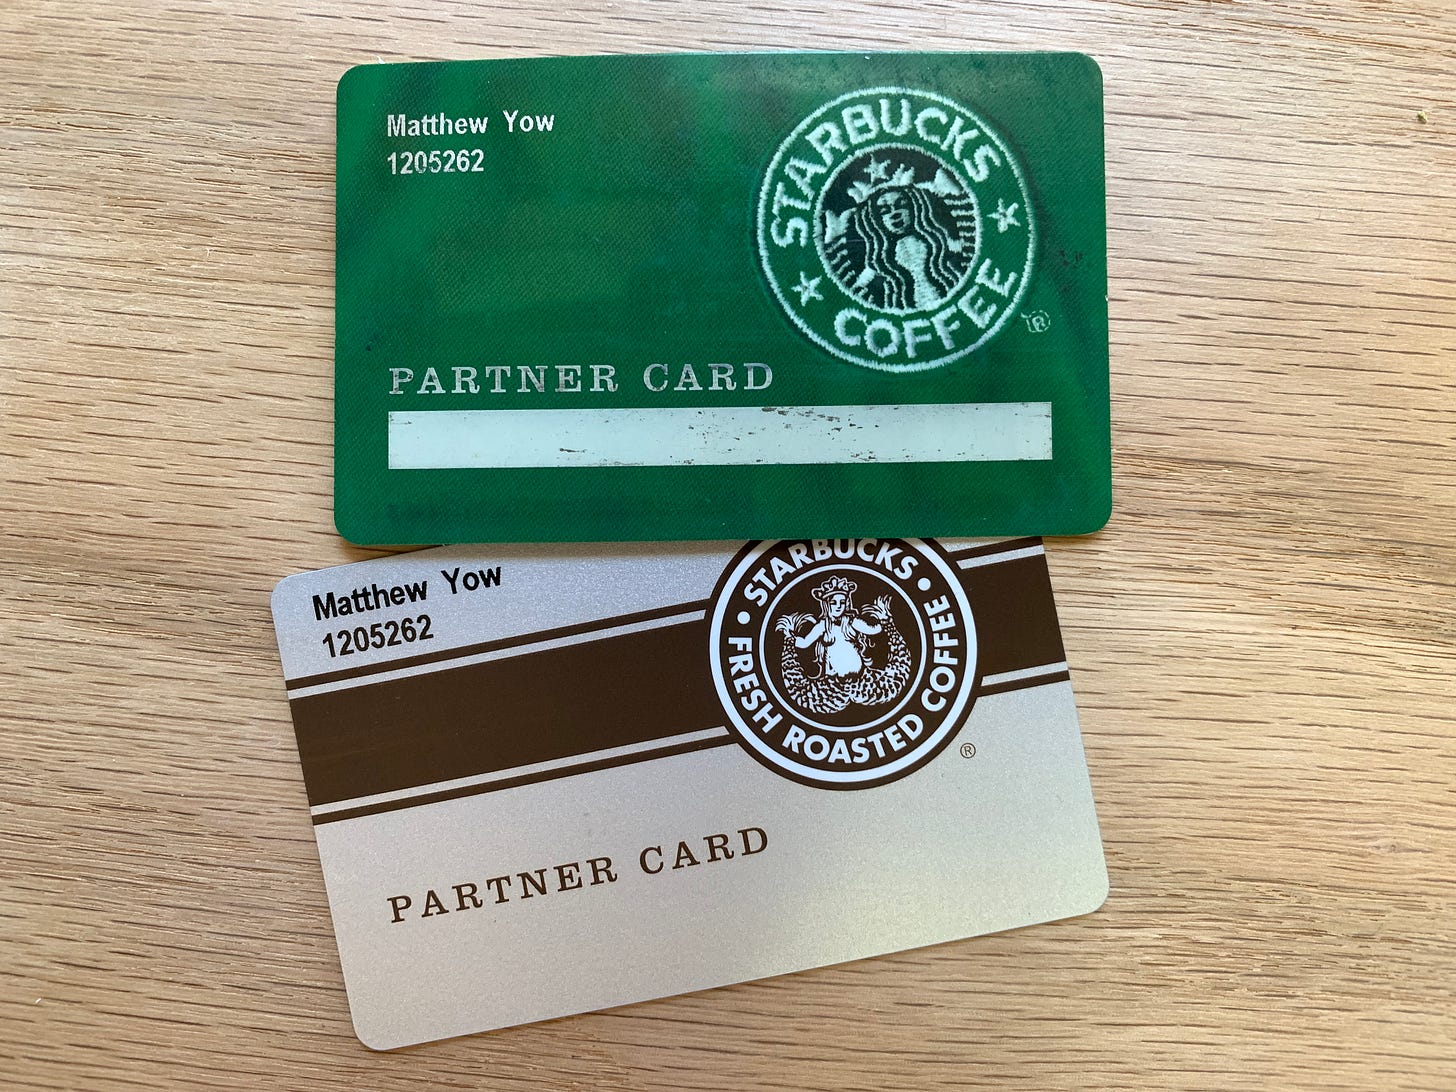 Partner cards